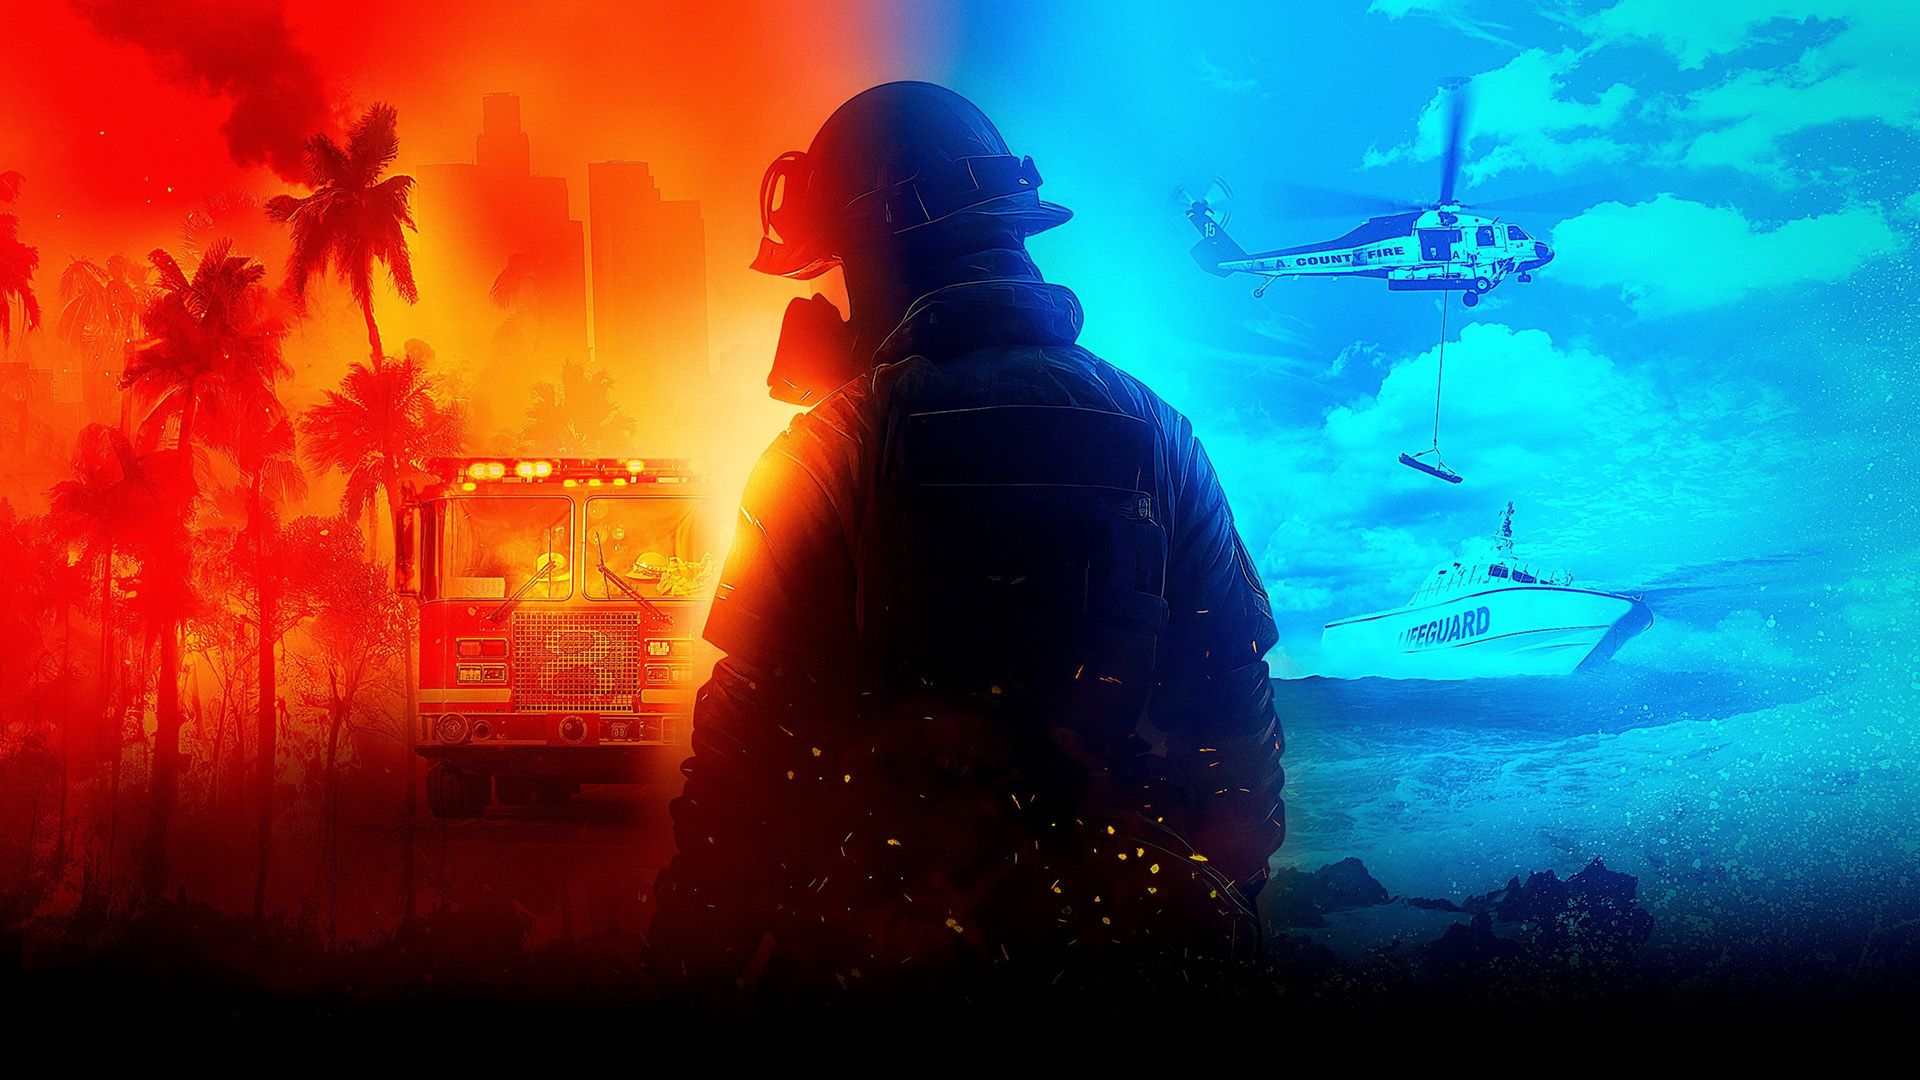 LA Fire and Rescue background